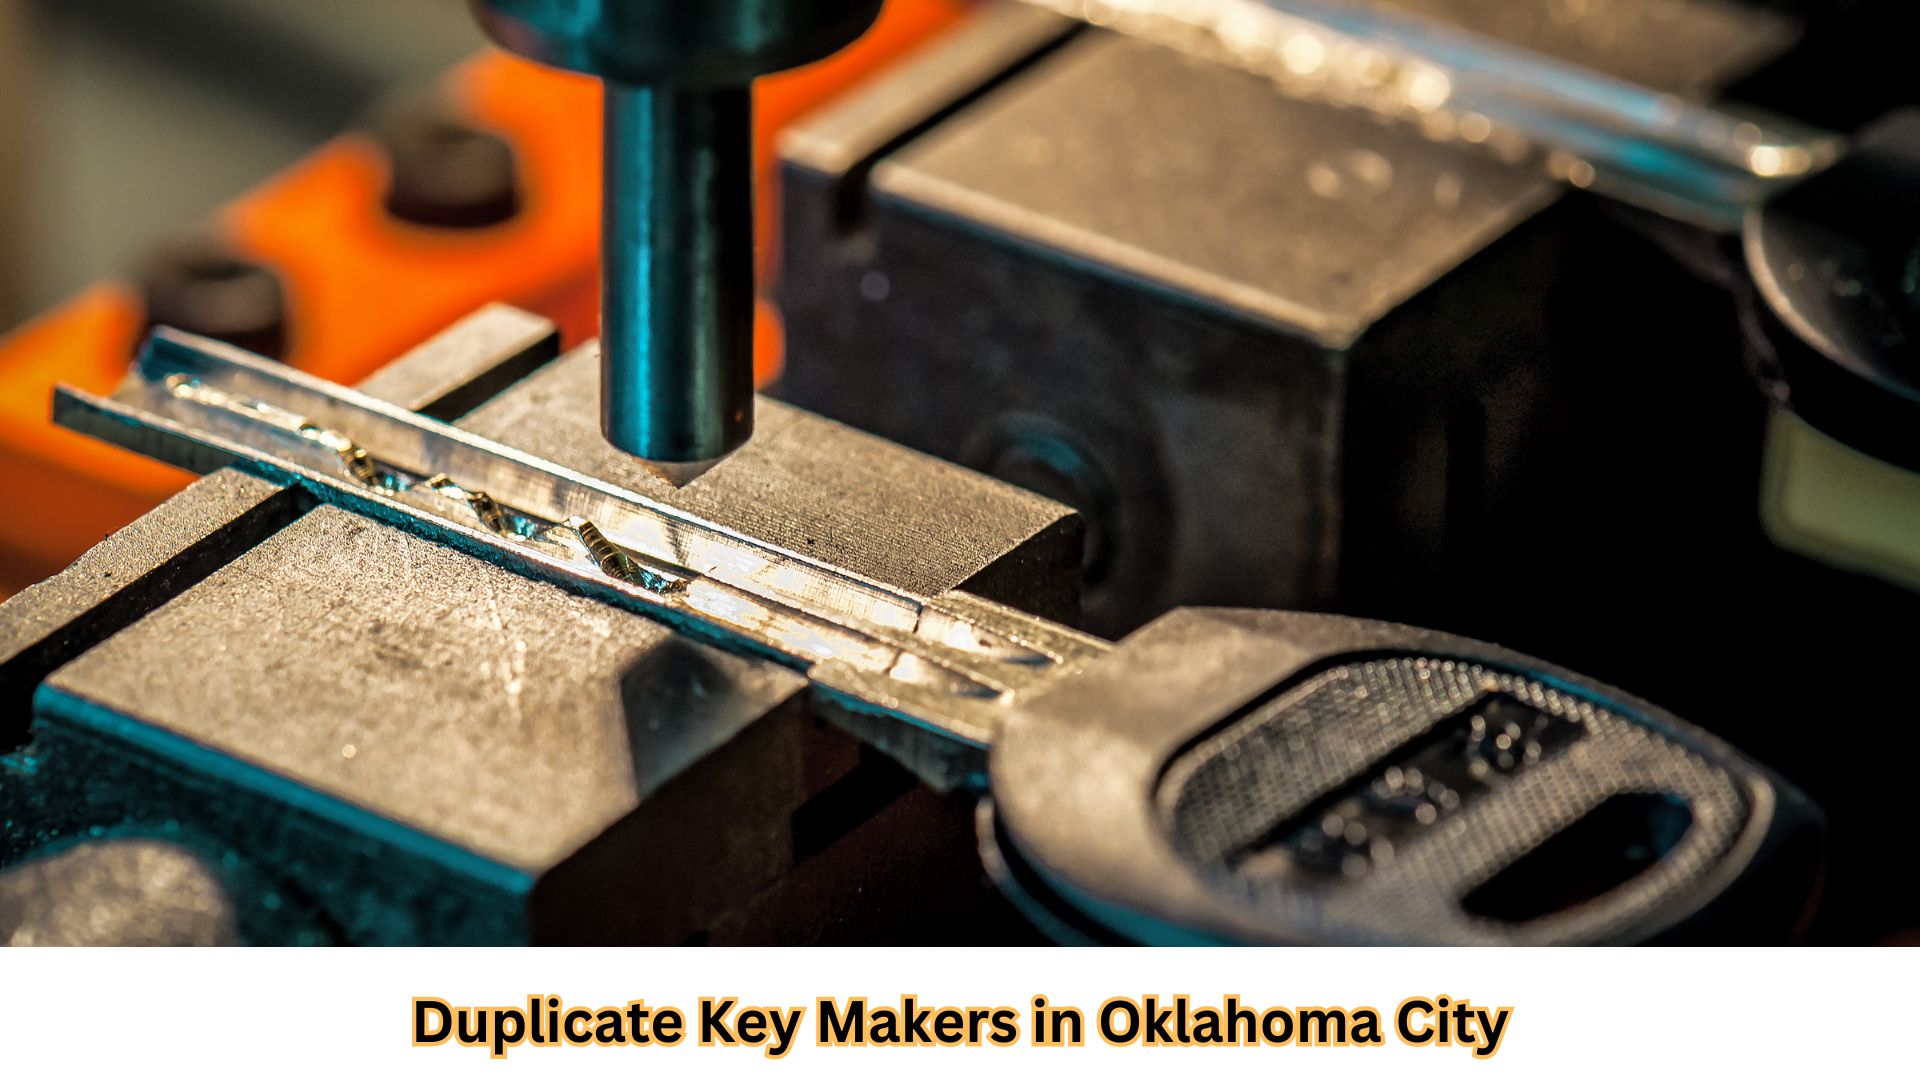 Duplicate key services in OKC
OKC locksmith duplicate keys
Duplicate key cutting OKC
Duplicate car keys OKC
OKC duplicate key replacement
Duplicate key maker OKC
